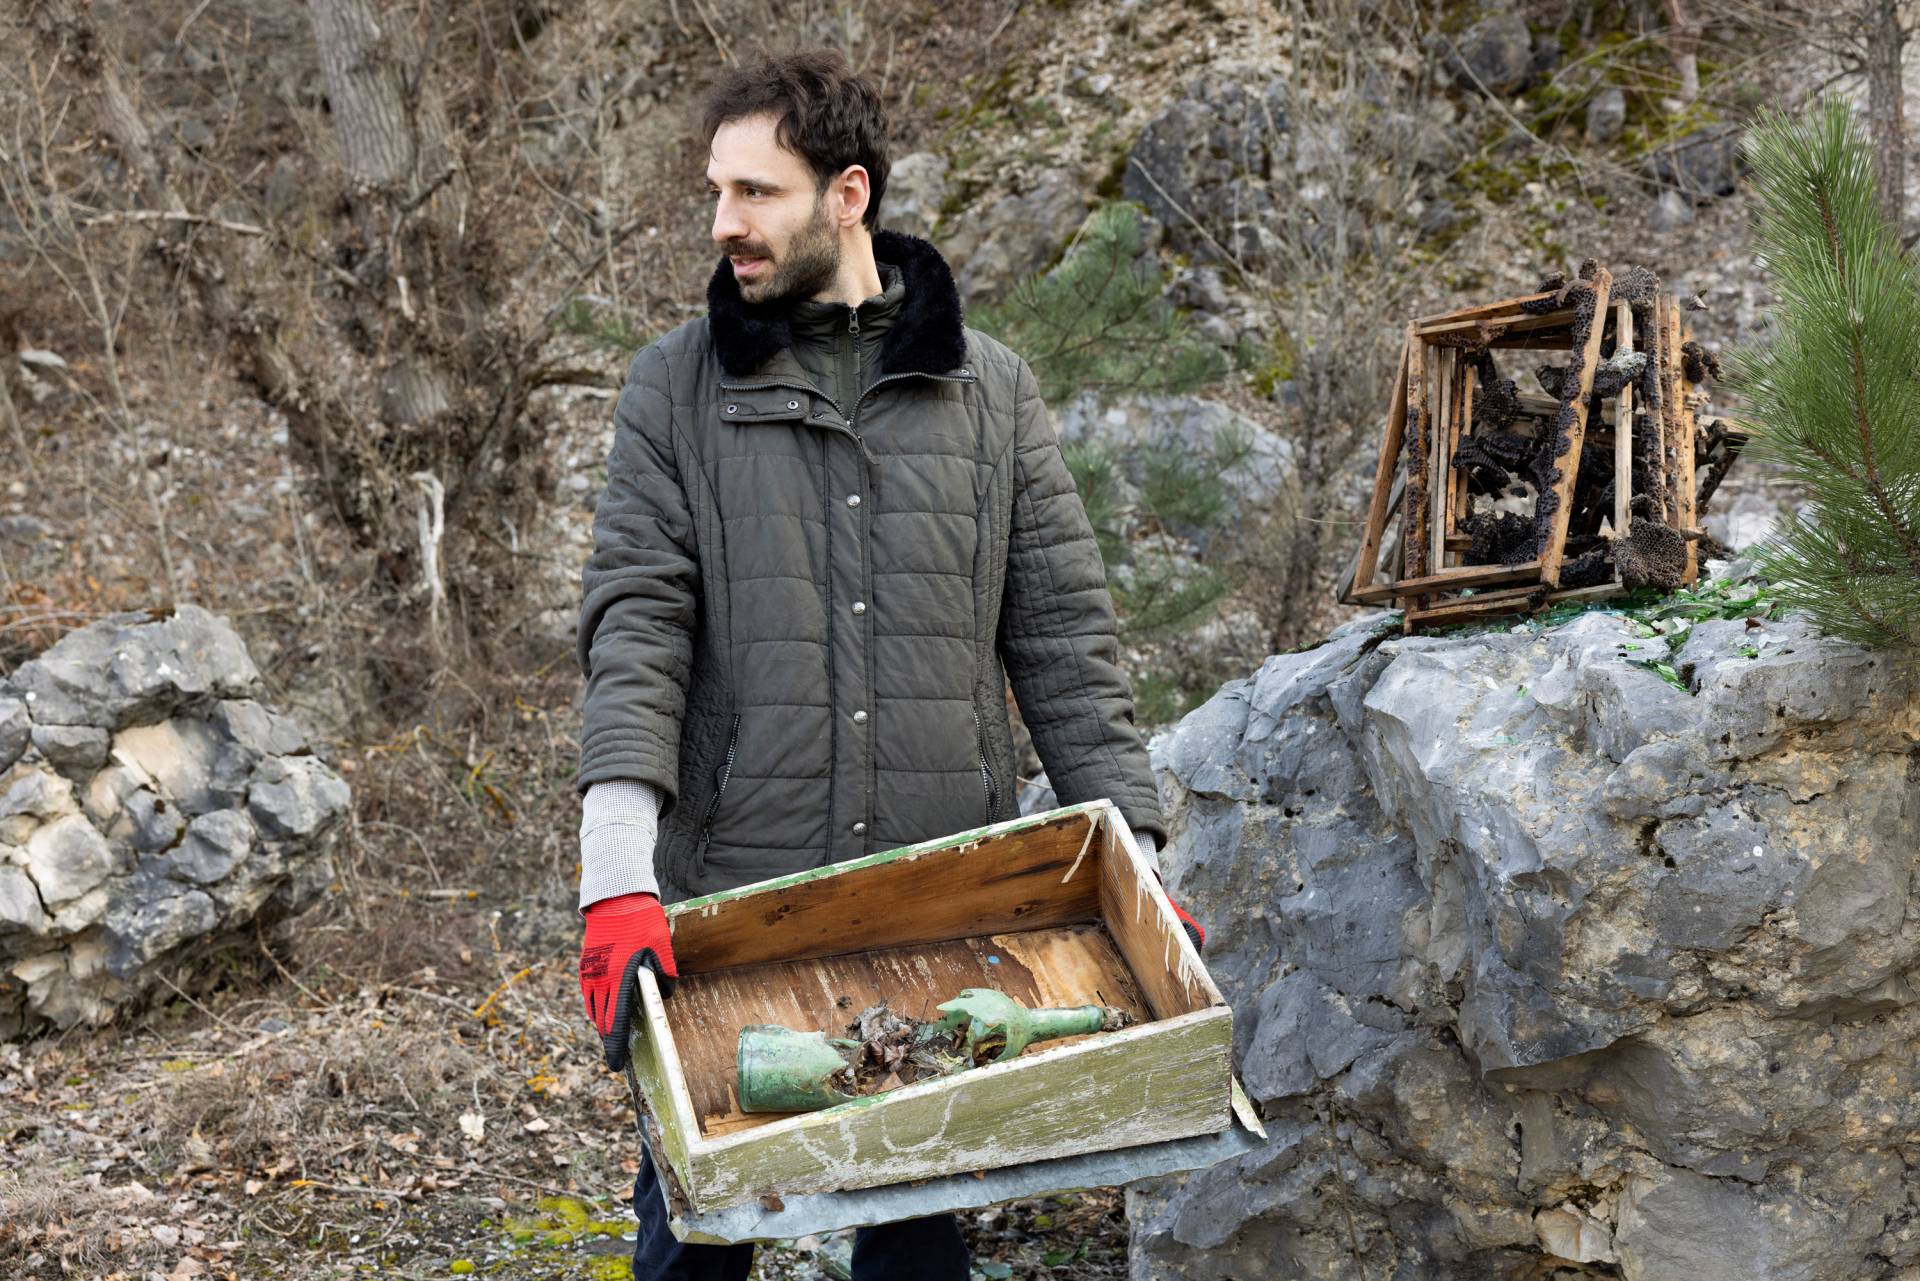 Julian Chehirian carries a broken bottle in a wooden crate 